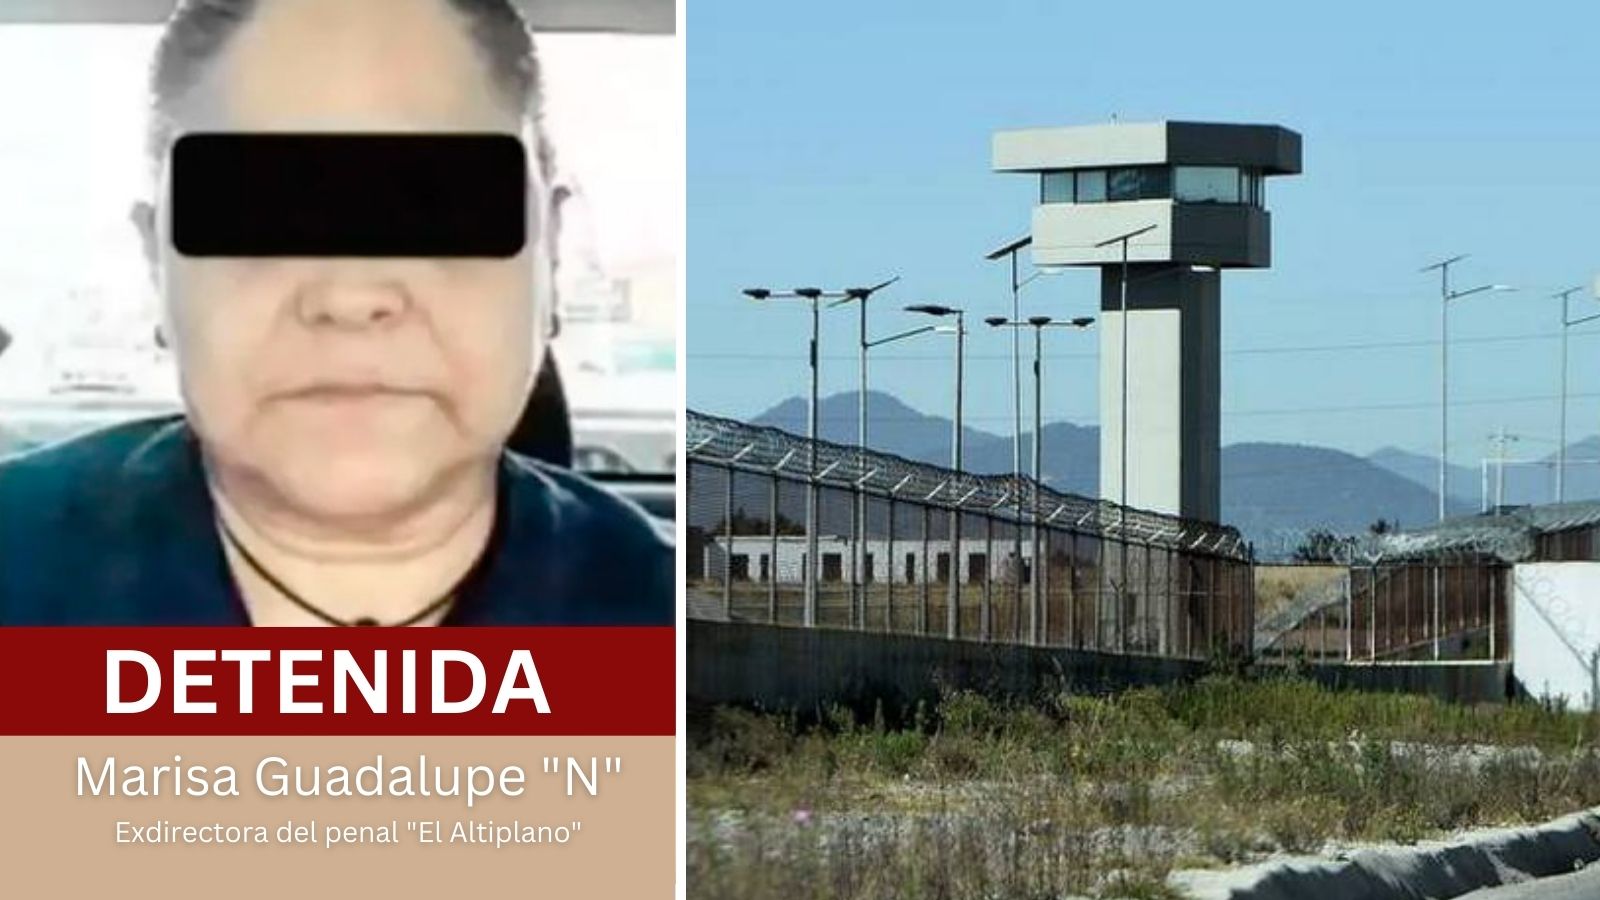 Arrestan a exdirectora del penal “El Altiplano” por el delito de tortura